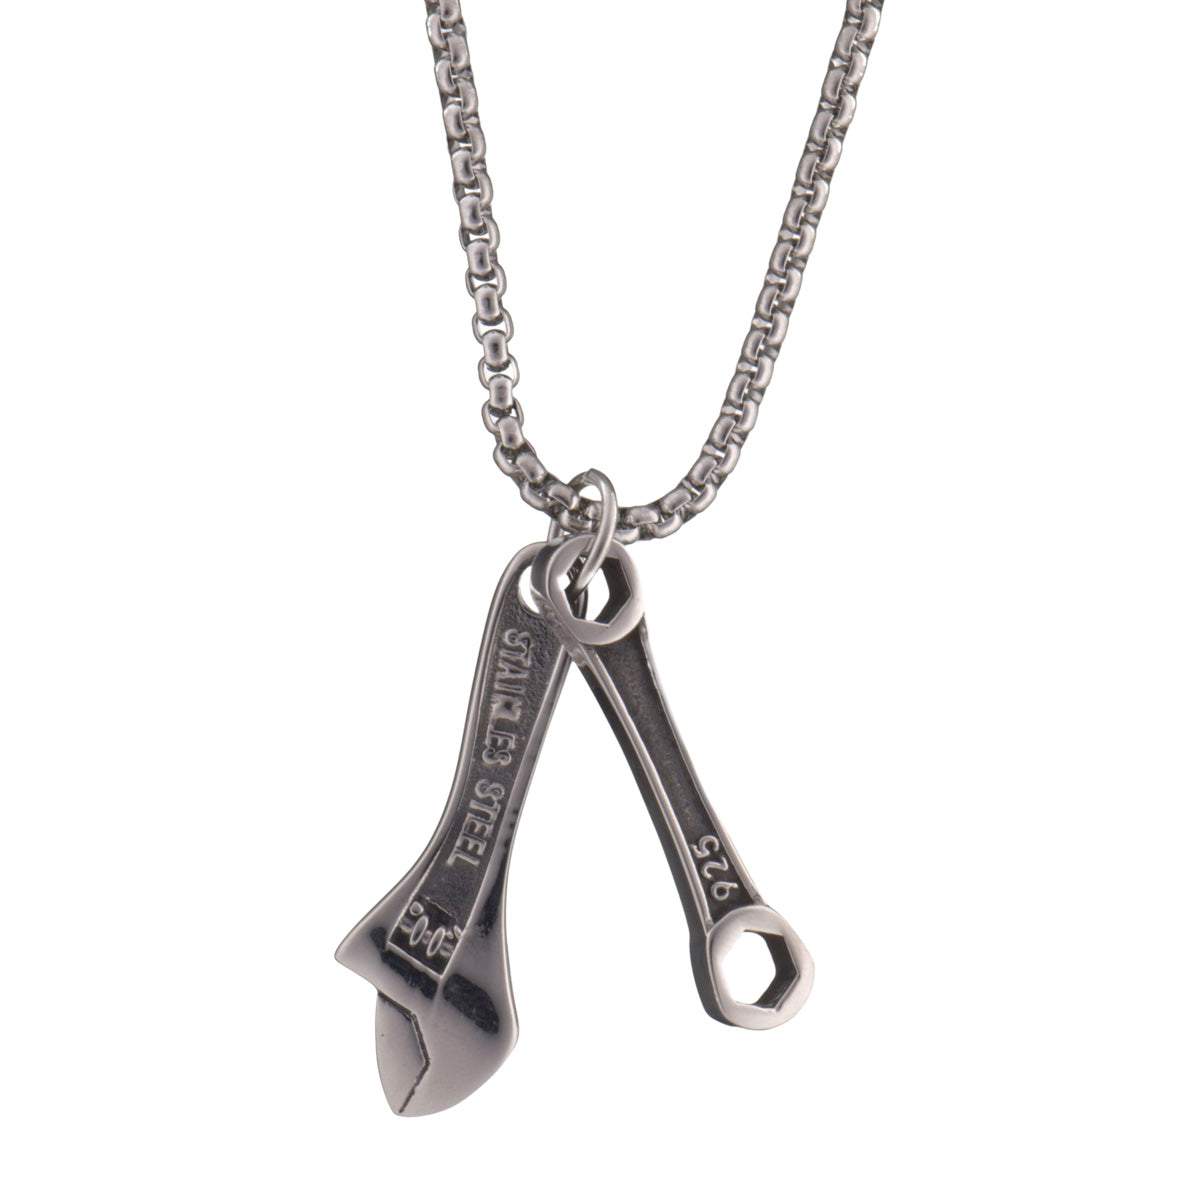 Dividing wrench pendant necklace 60cm (steel 316L)